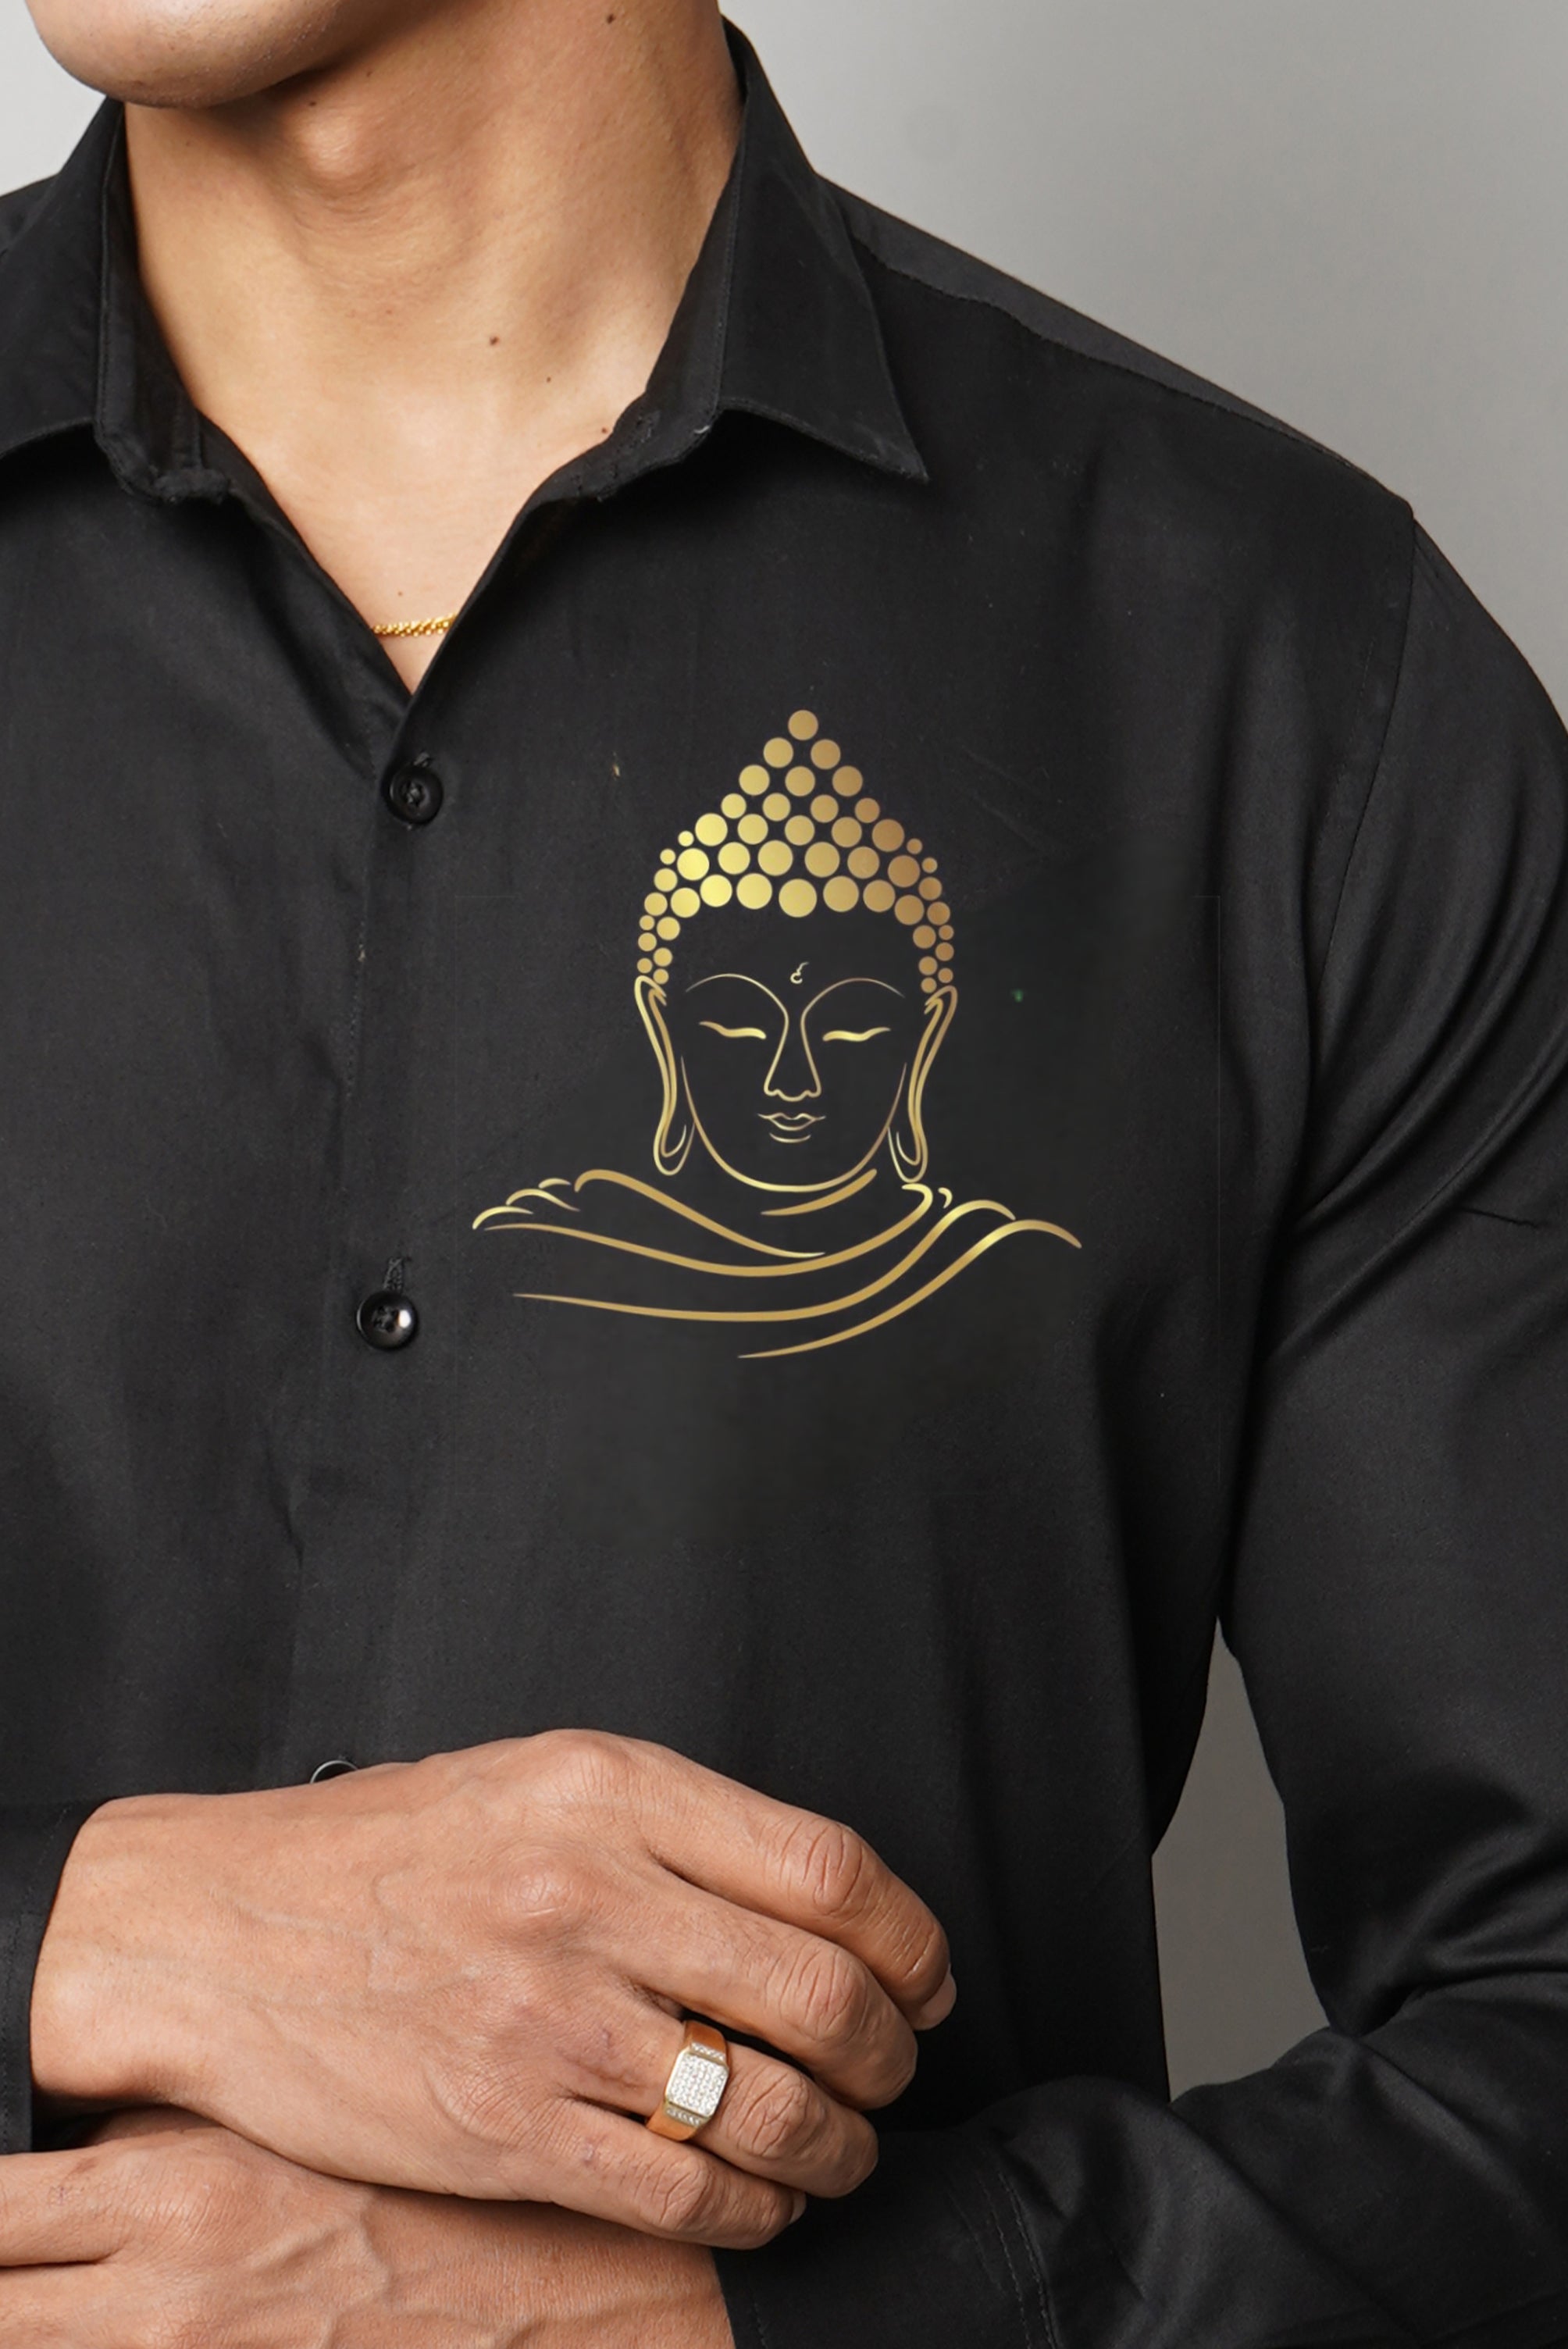 Golden Buddha Handpainted Shirt